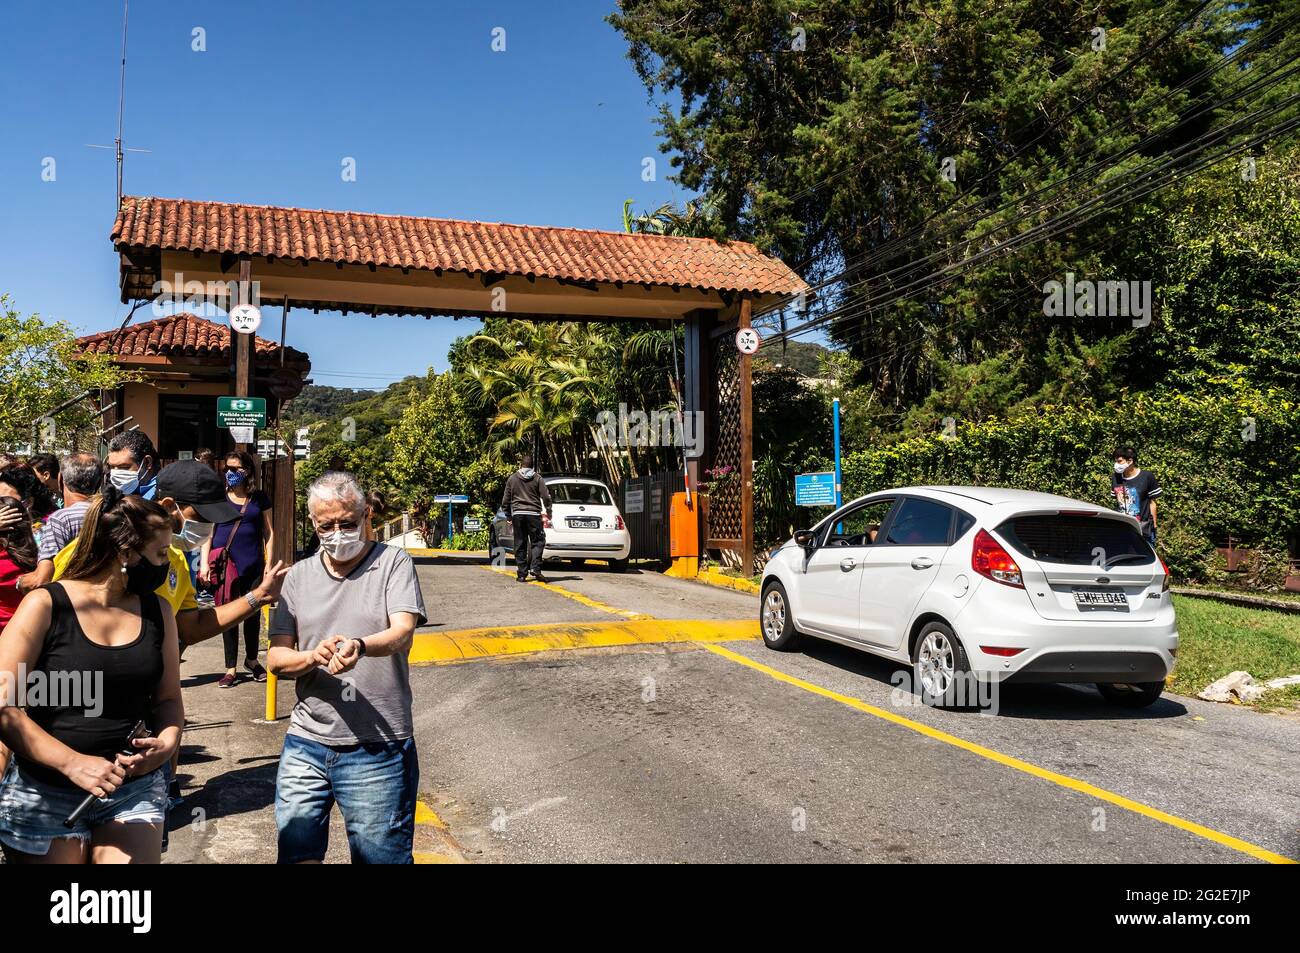 Voitures passant par la porte d'entrée du complexe de football Granja Comary, le siège et le centre d'entraînement principal de l'équipe nationale de football du Brésil. Banque D'Images